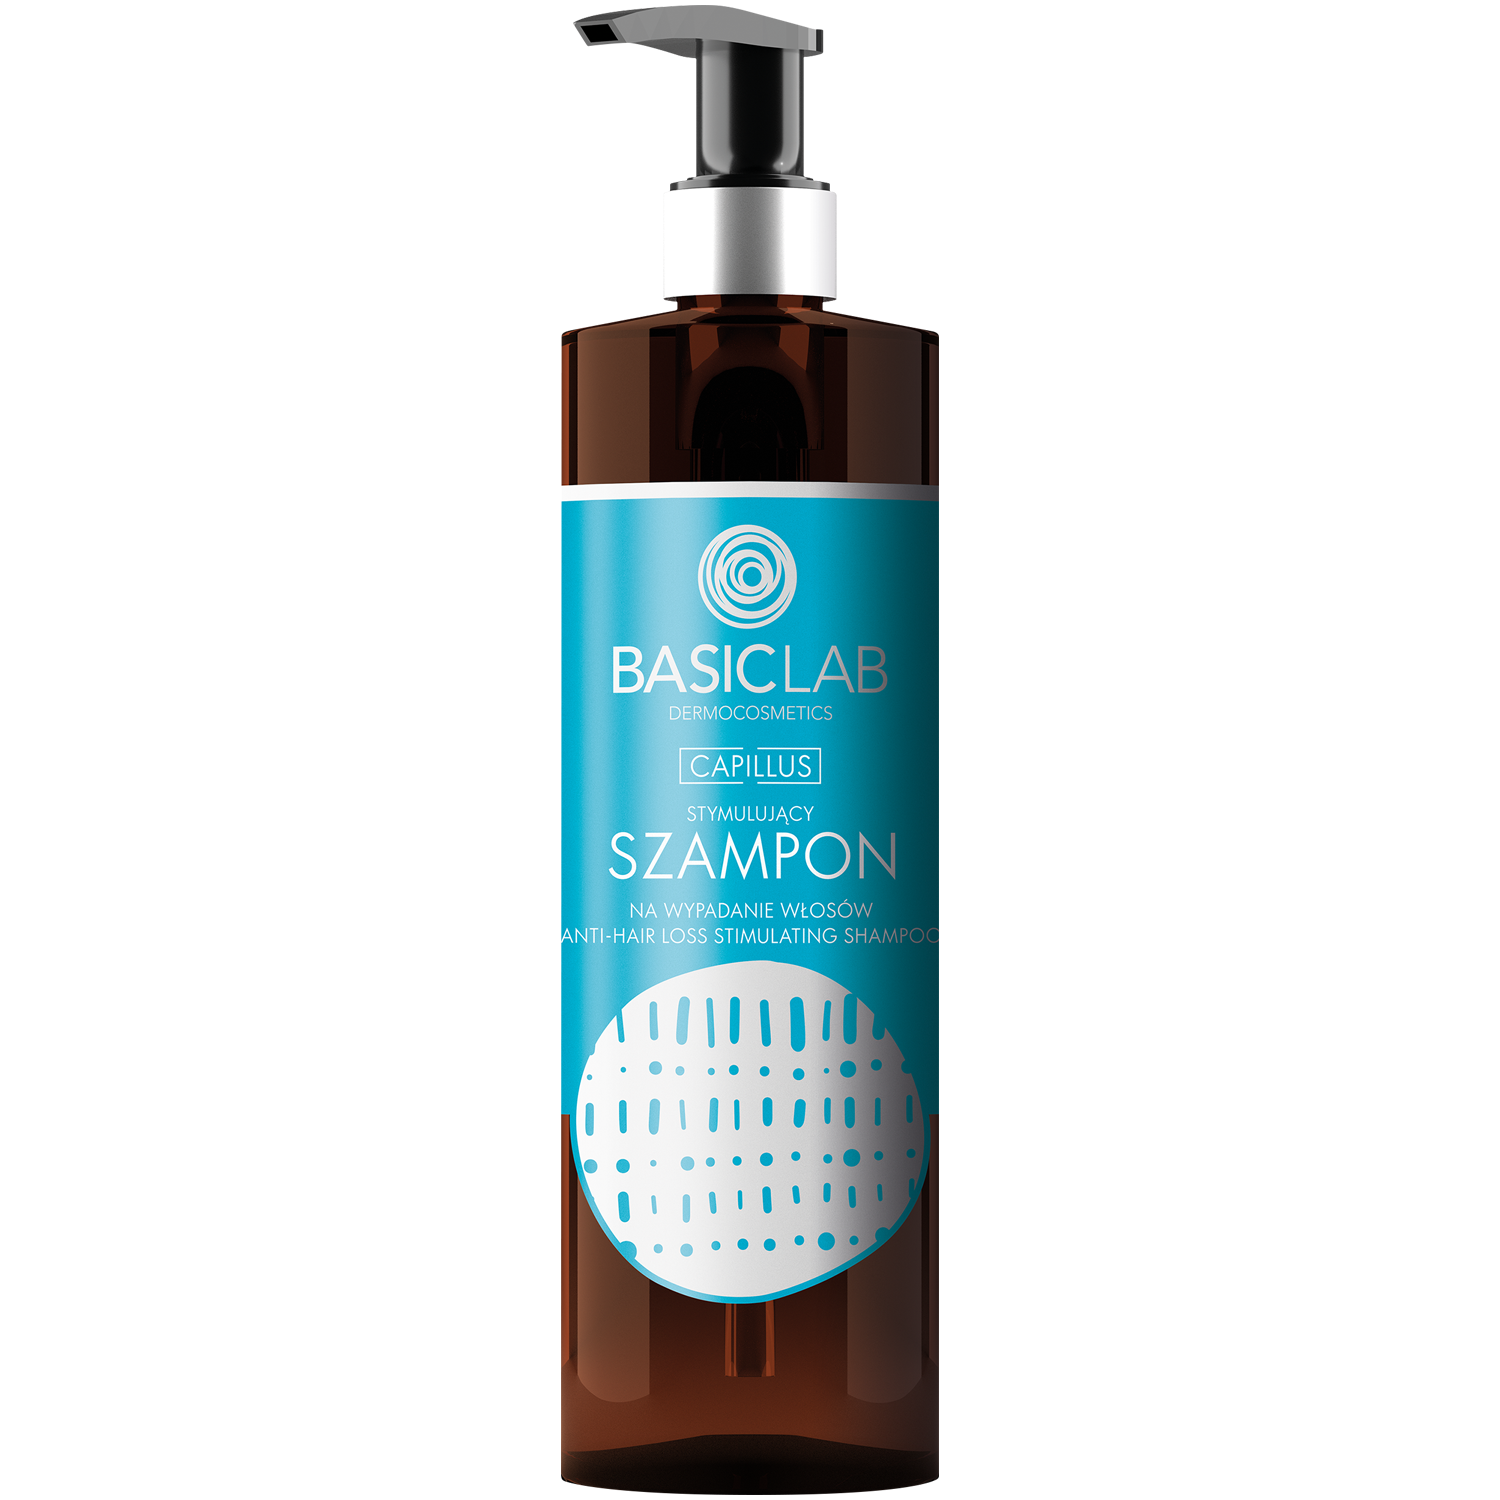 basiclab capillus stymulujący szampon przeciw wypadaniu włosów opinie